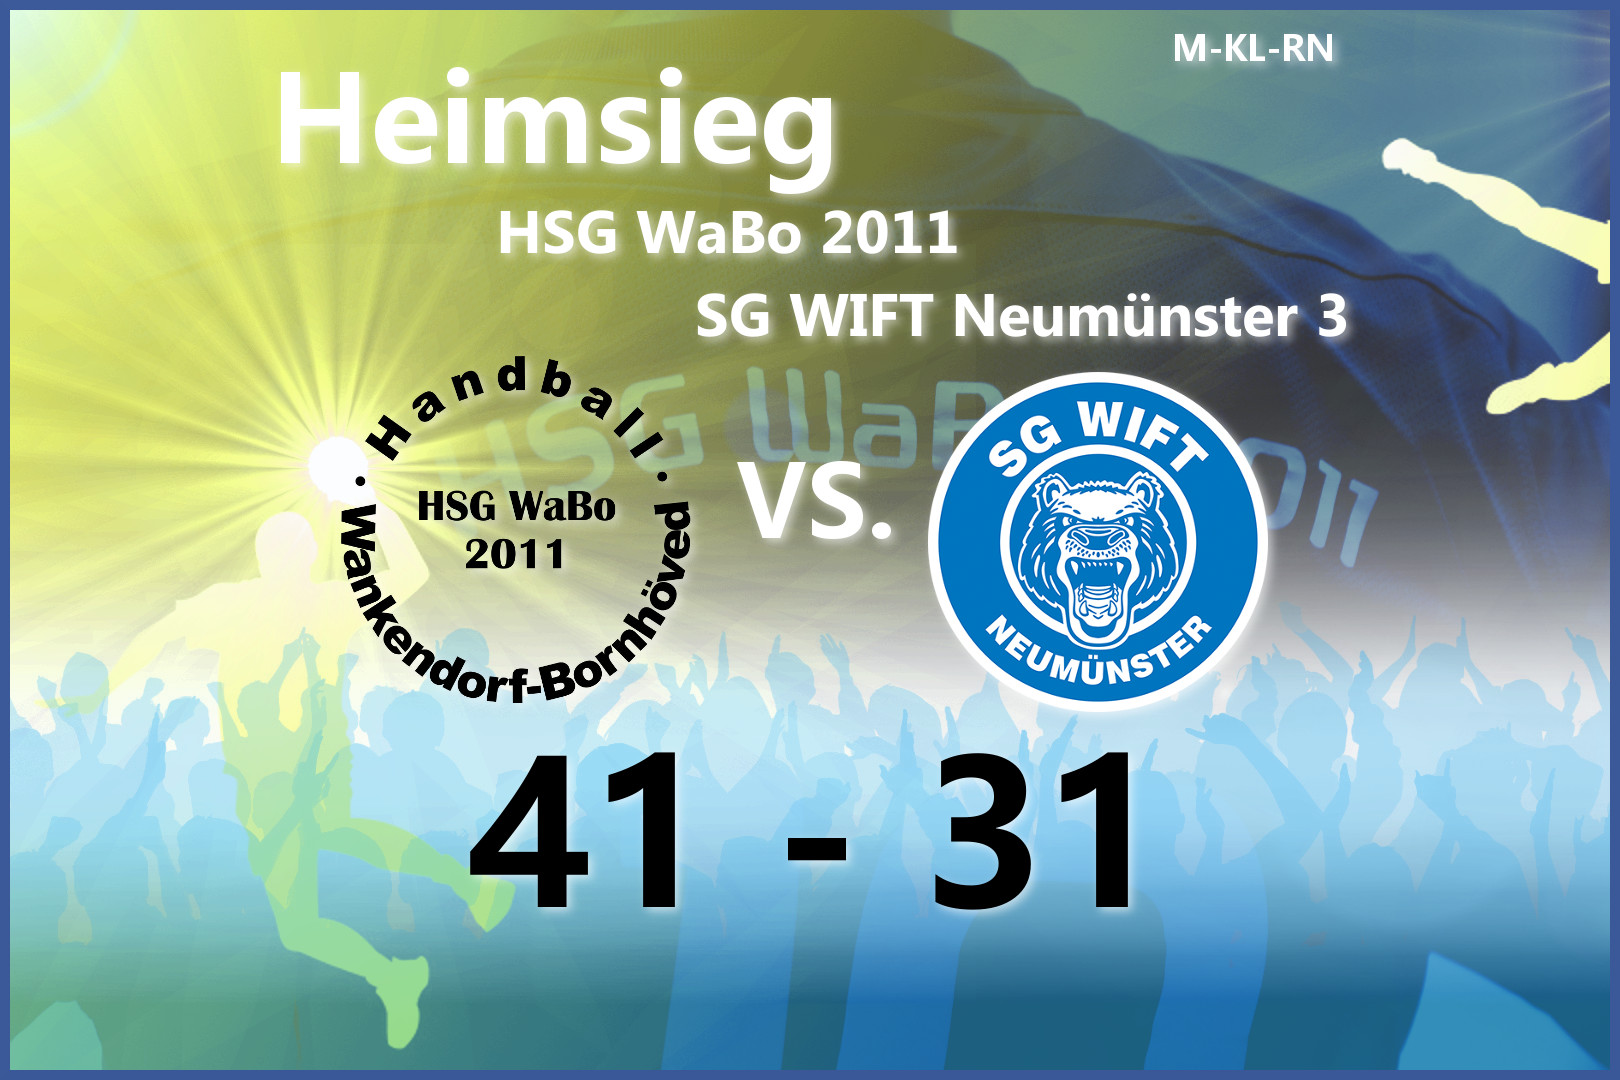 HSG WaBo 2011 - SG WIFT Neumünster 3